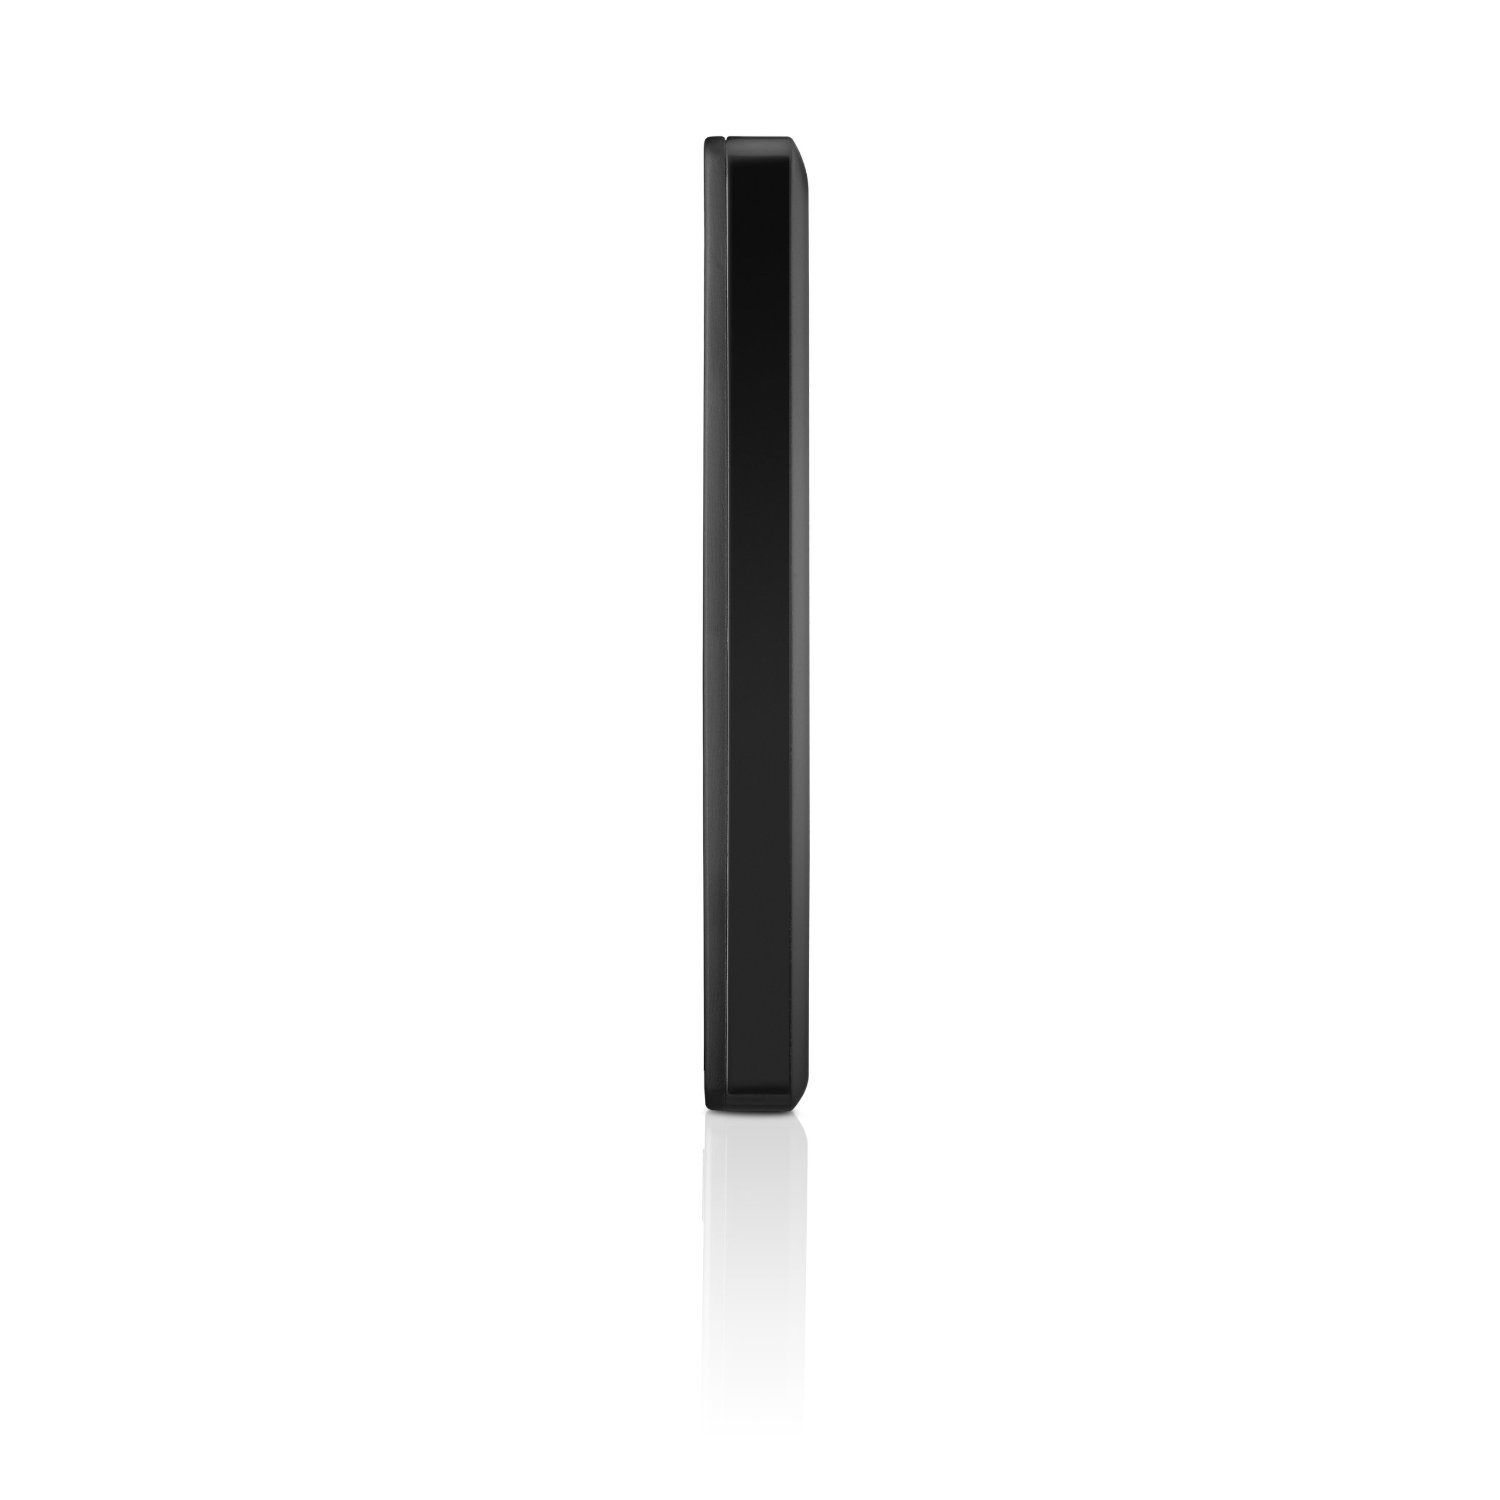 Ổ cứng lắp ngoài Seagate BackupPlus Slim 1Tb 2.5' Black